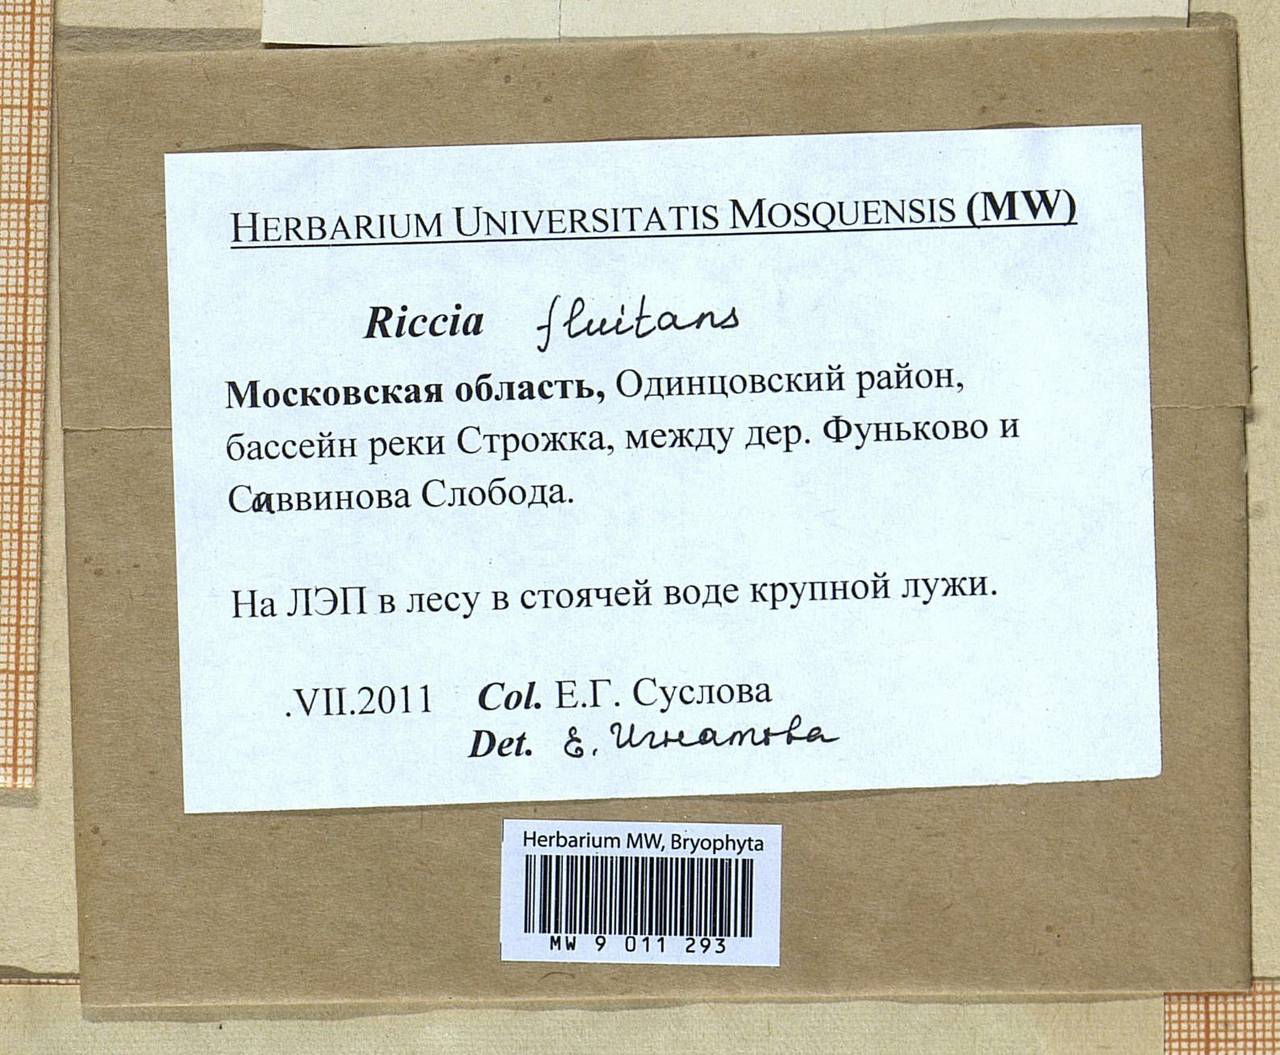 Riccia fluitans L., Гербарий мохообразных, Мхи - Москва и Московская область (B6a) (Россия)